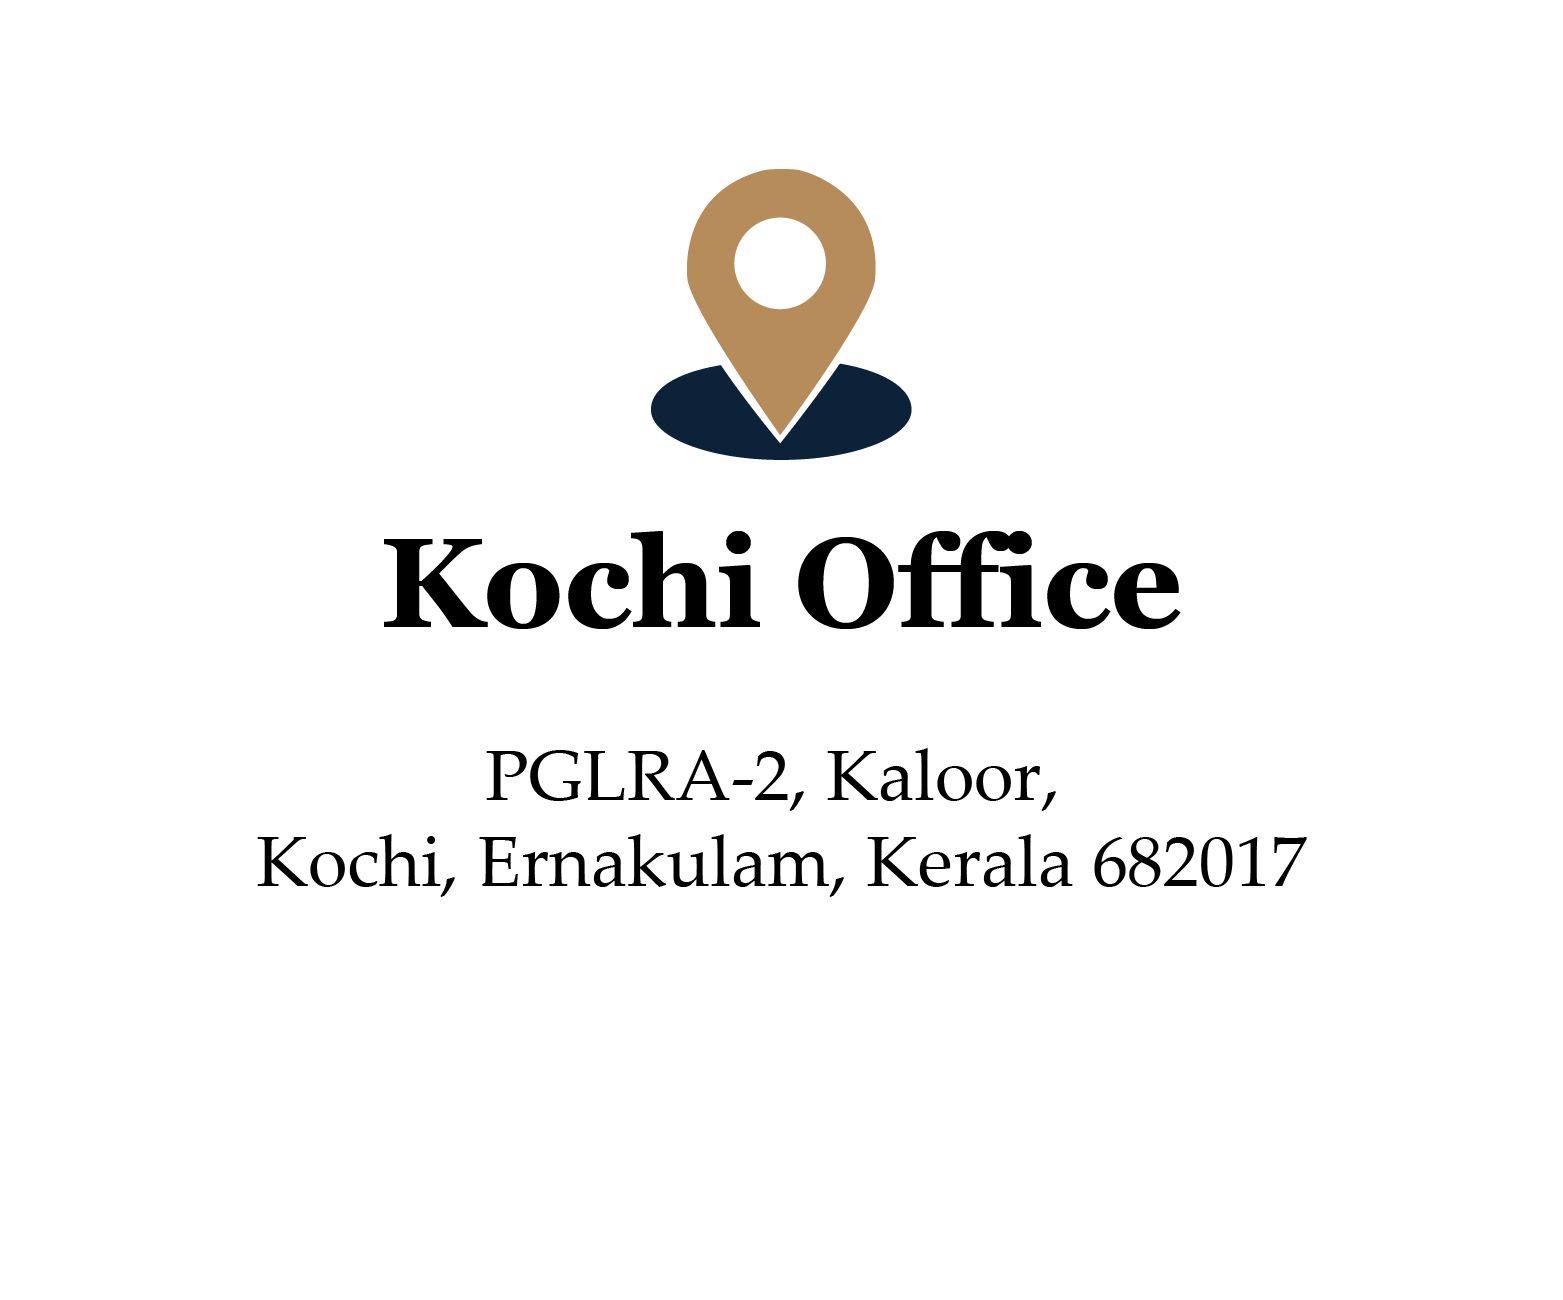 kochi office